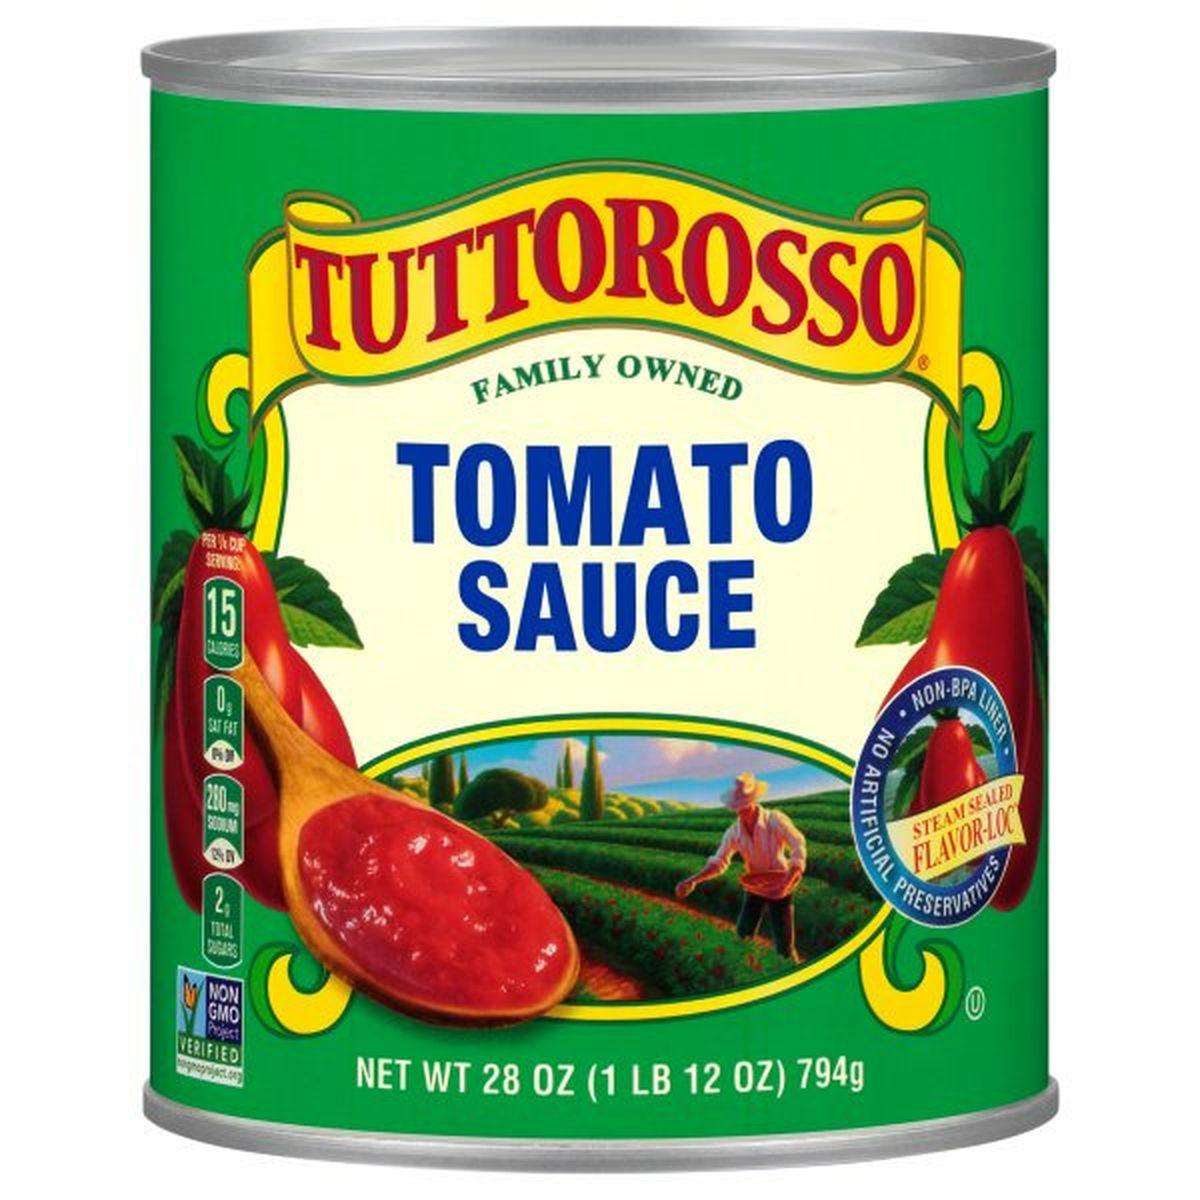 Calories in Tuttorosso Tomatoes Tomato Sauce